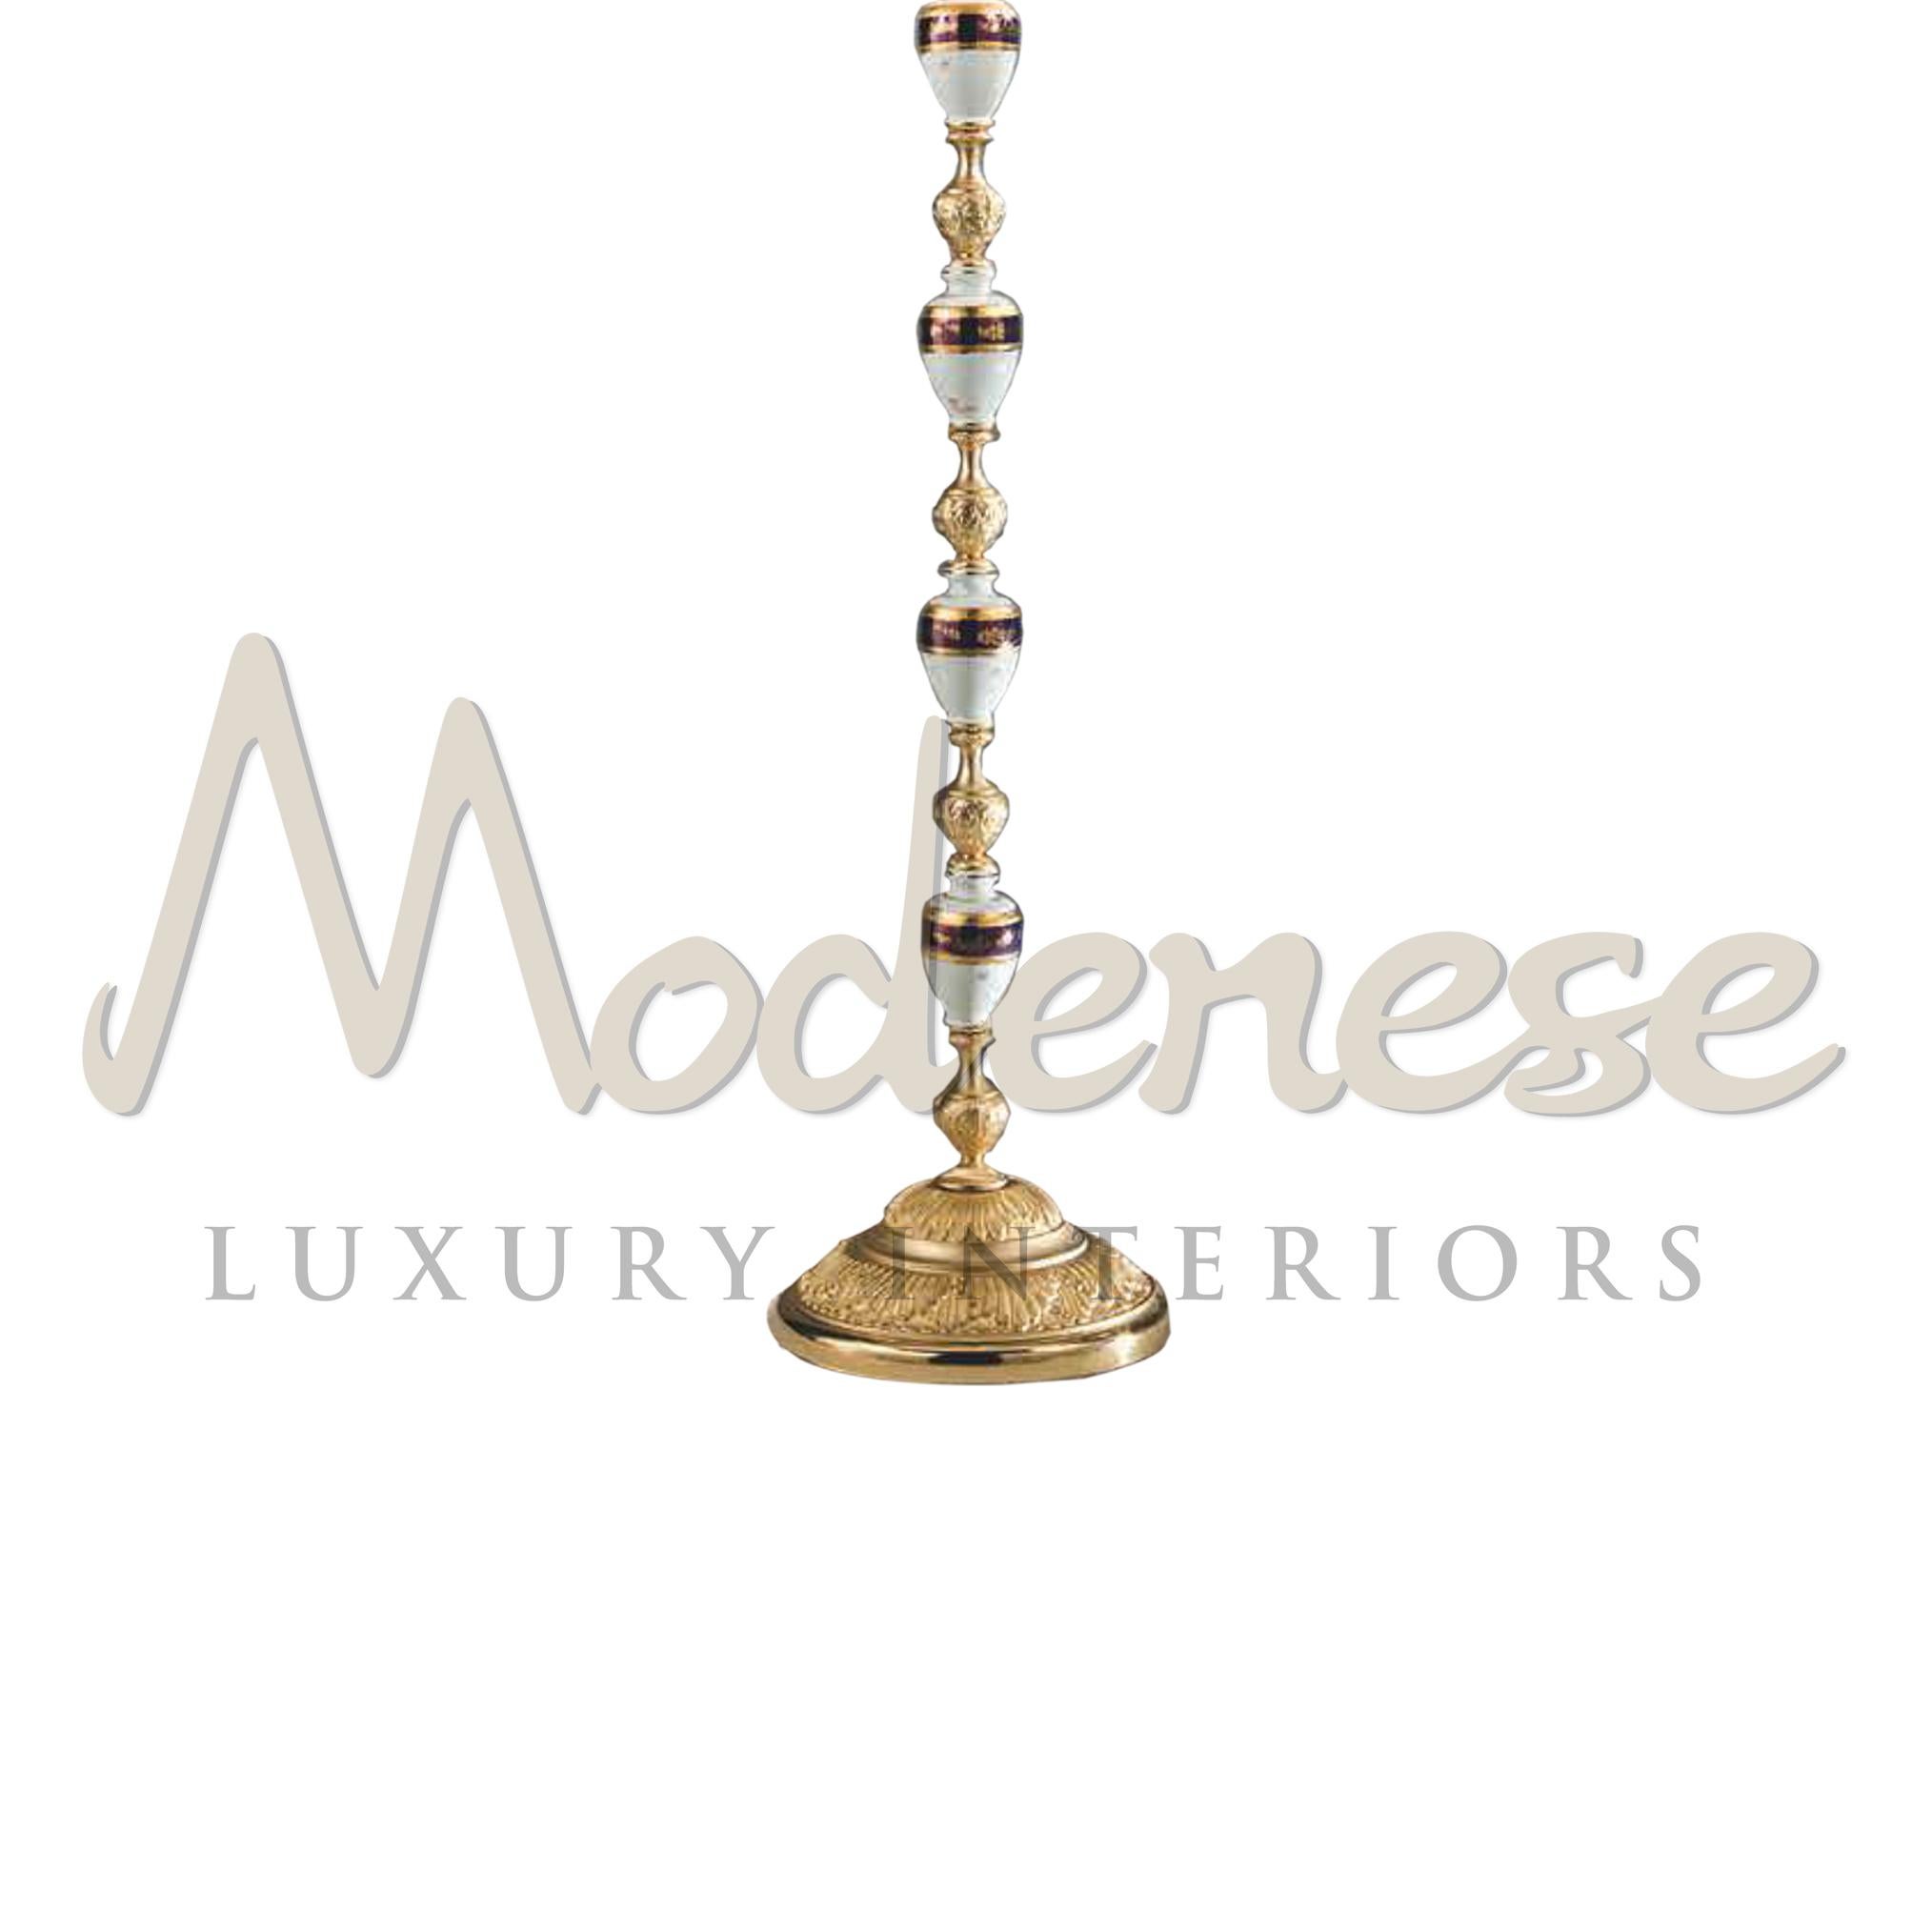 Die von Modenese Luxury Interiors zusammengestellten Porzellanelemente, die mit dem Lampenschirm abgestimmten Anhänger aus Scholer-Kristall und die in die 3-flammige Stehleuchte aus Kunstguss eingebettet sind, verleihen ihr einen eleganten Touch,